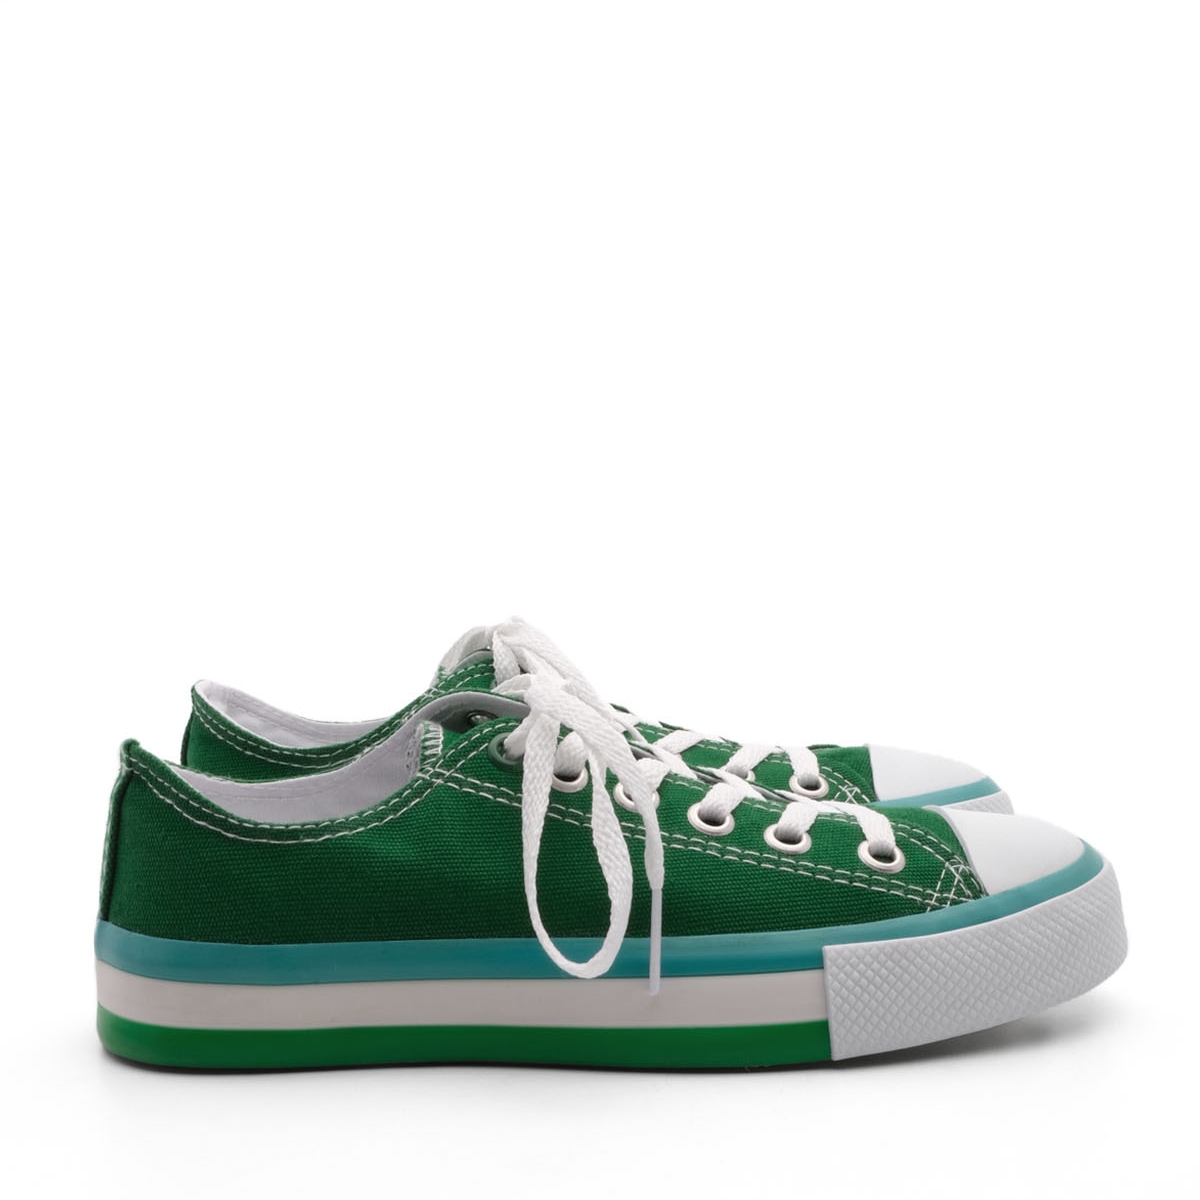 Flo Kadın Sneaker Keten Kumaş Bağcıklı Spor Ayakkabı Hesna Yeşil. 7